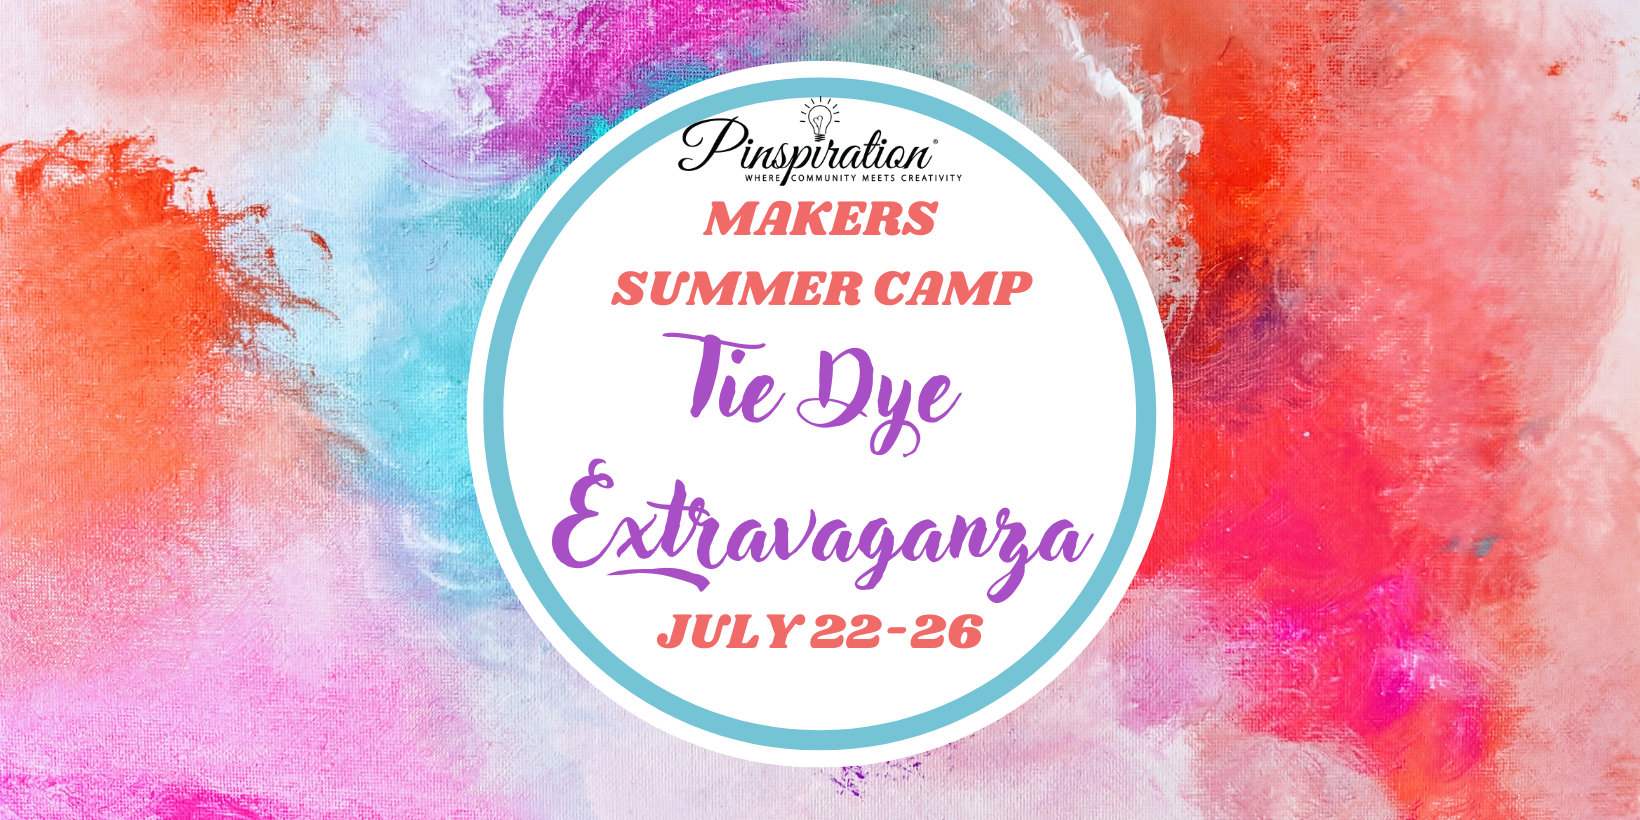 MAKERS SUMMER CAMP - TIE DYE EXTRAVAGANZA WEEK 5 JULY 22-26